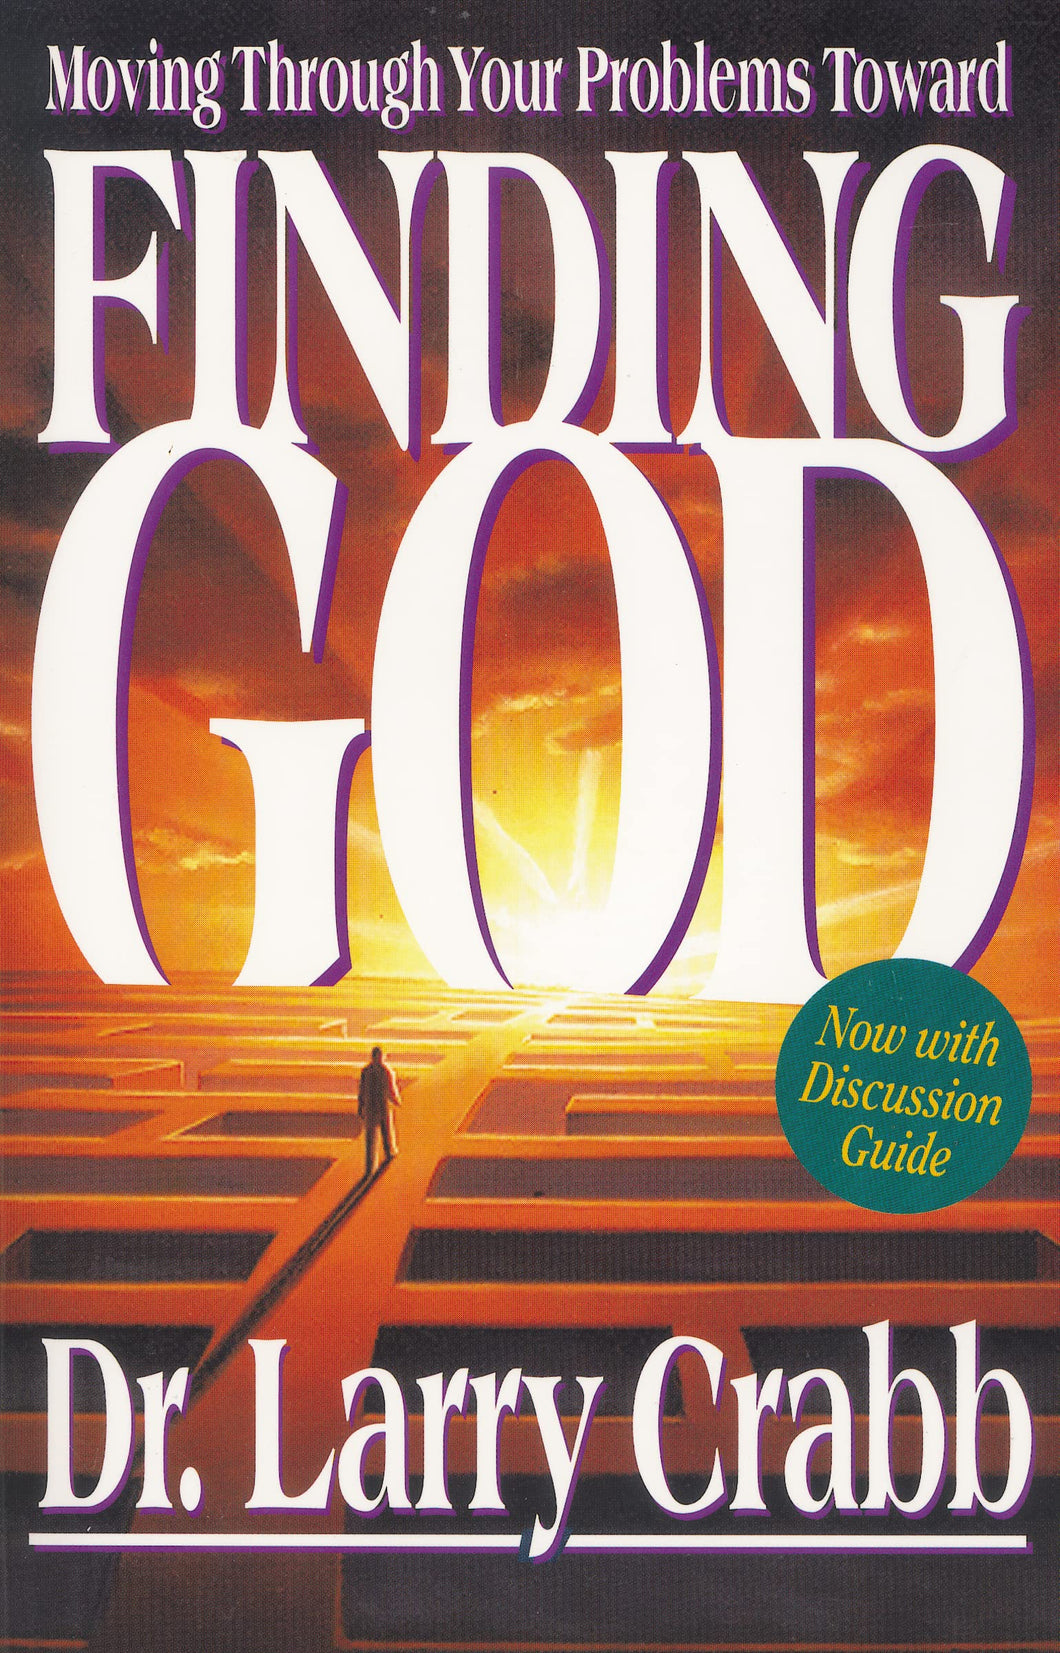 Finding God (Paperback)